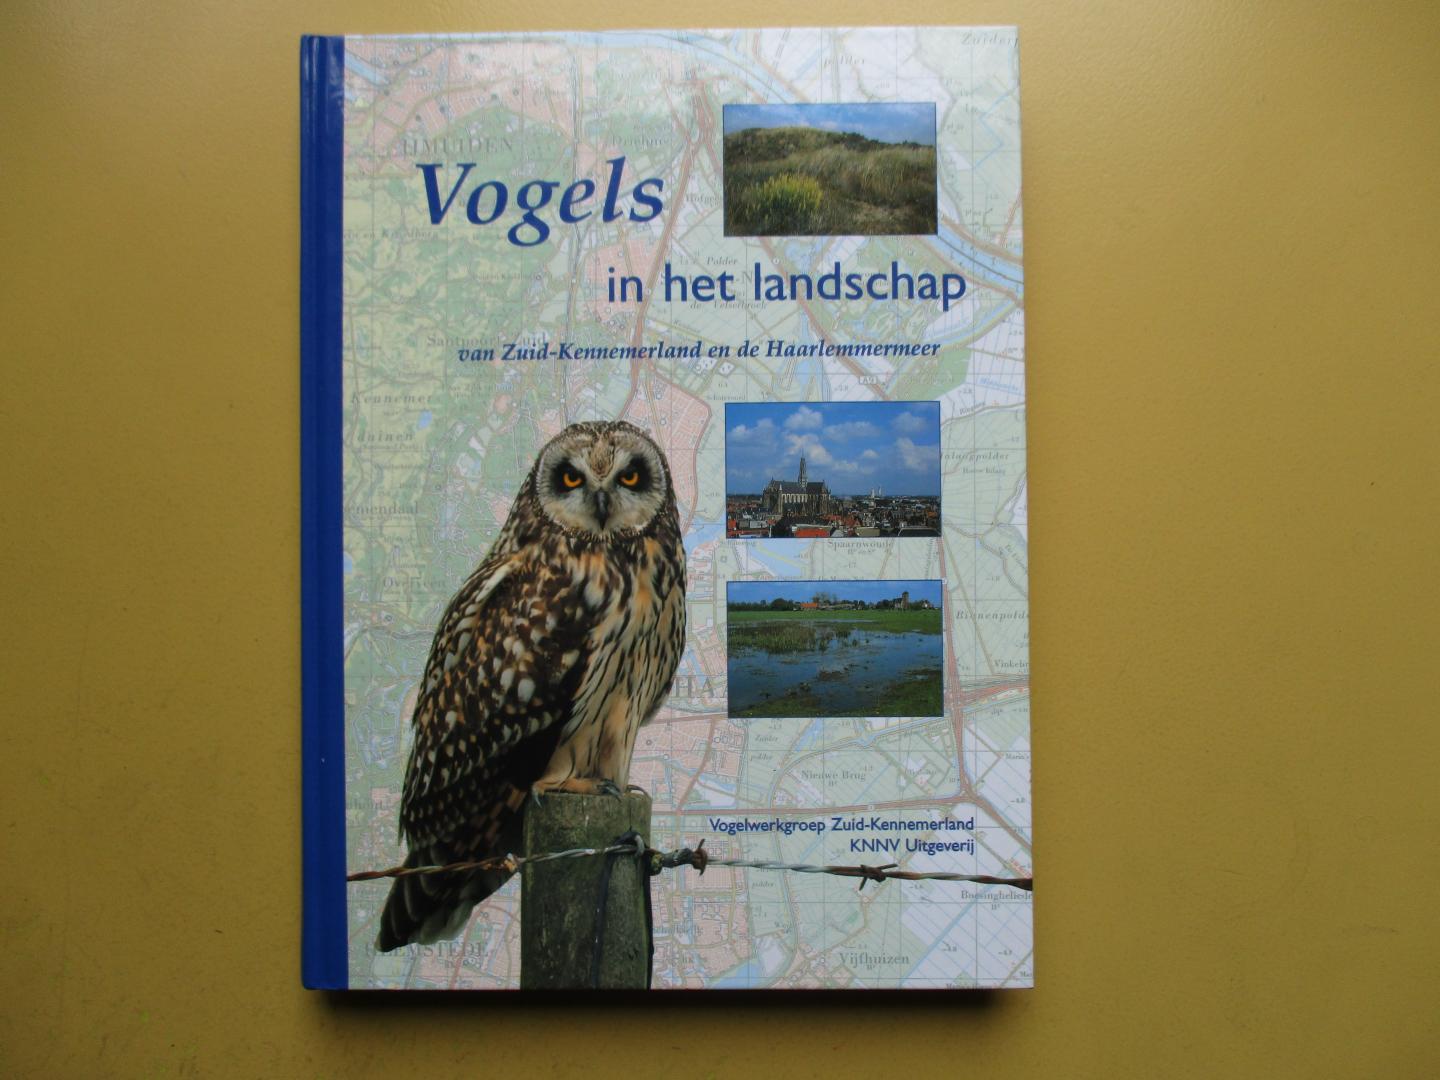 Geelhoed, Steve (Red. e.a.) - Vogels in het landschap van Zuid-Kennemerland en de Haarlemmermeer / druk 1